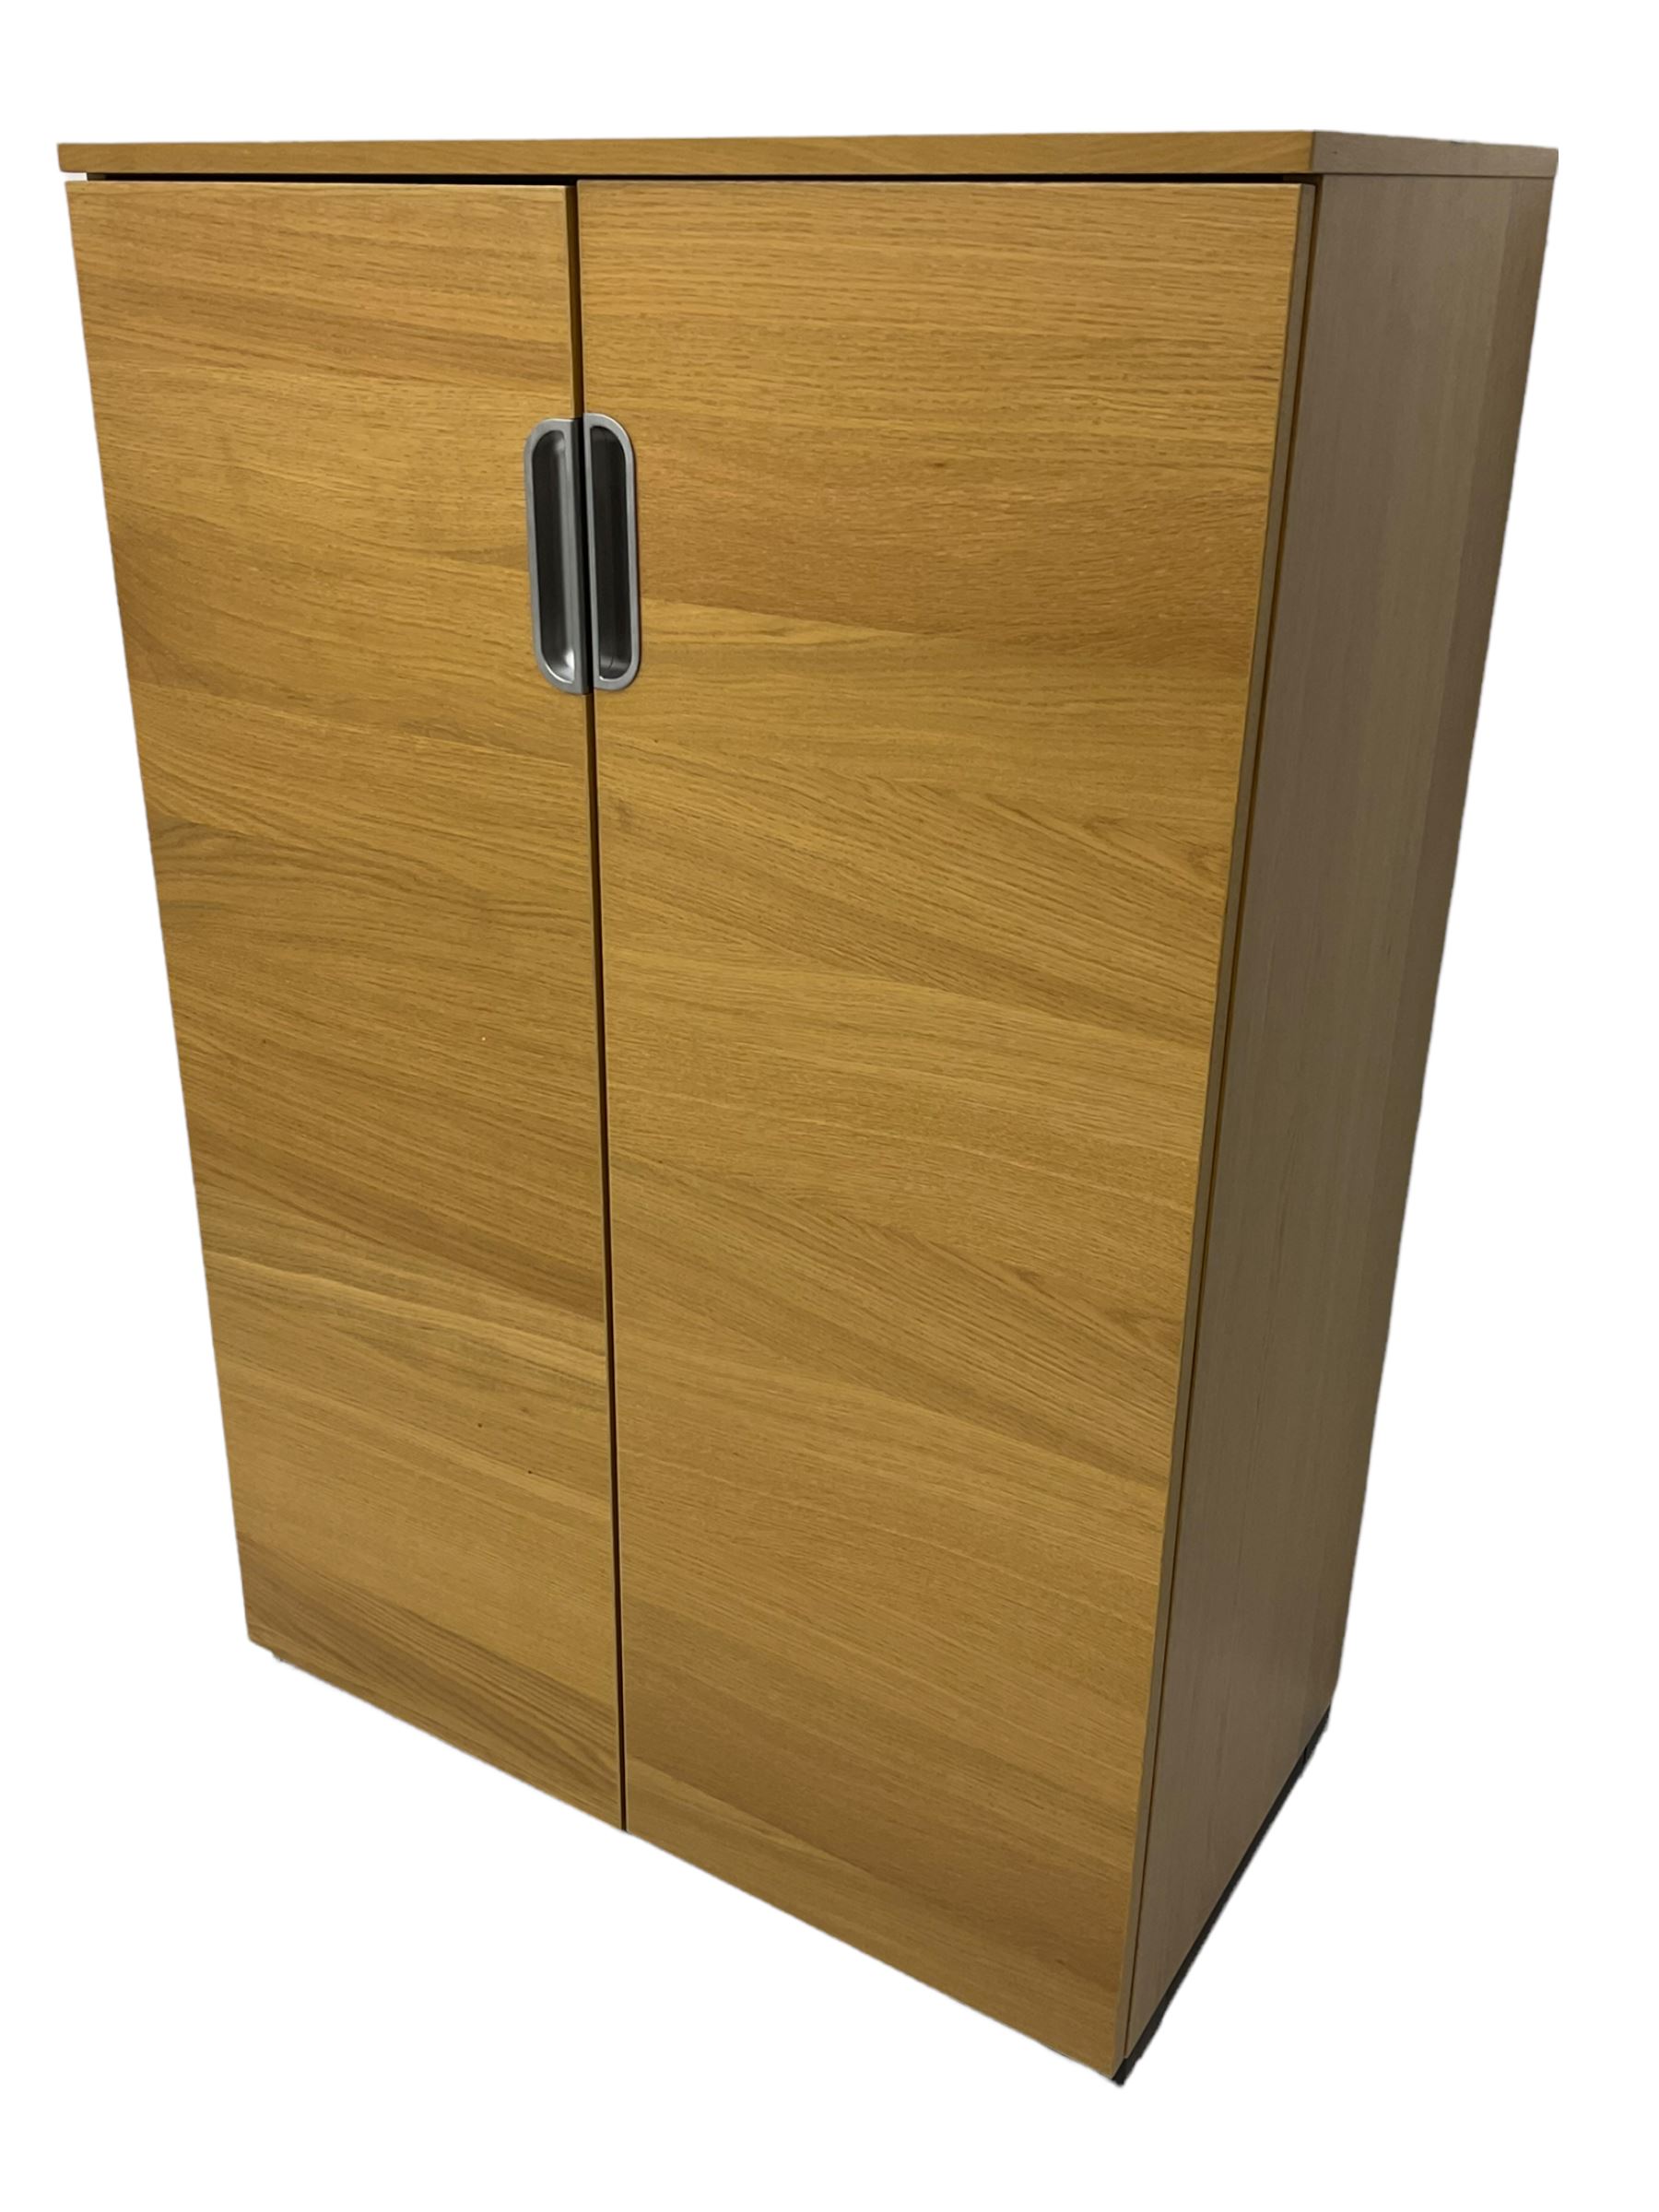 IKEA Galant light oak two door office cabinet - Image 2 of 4